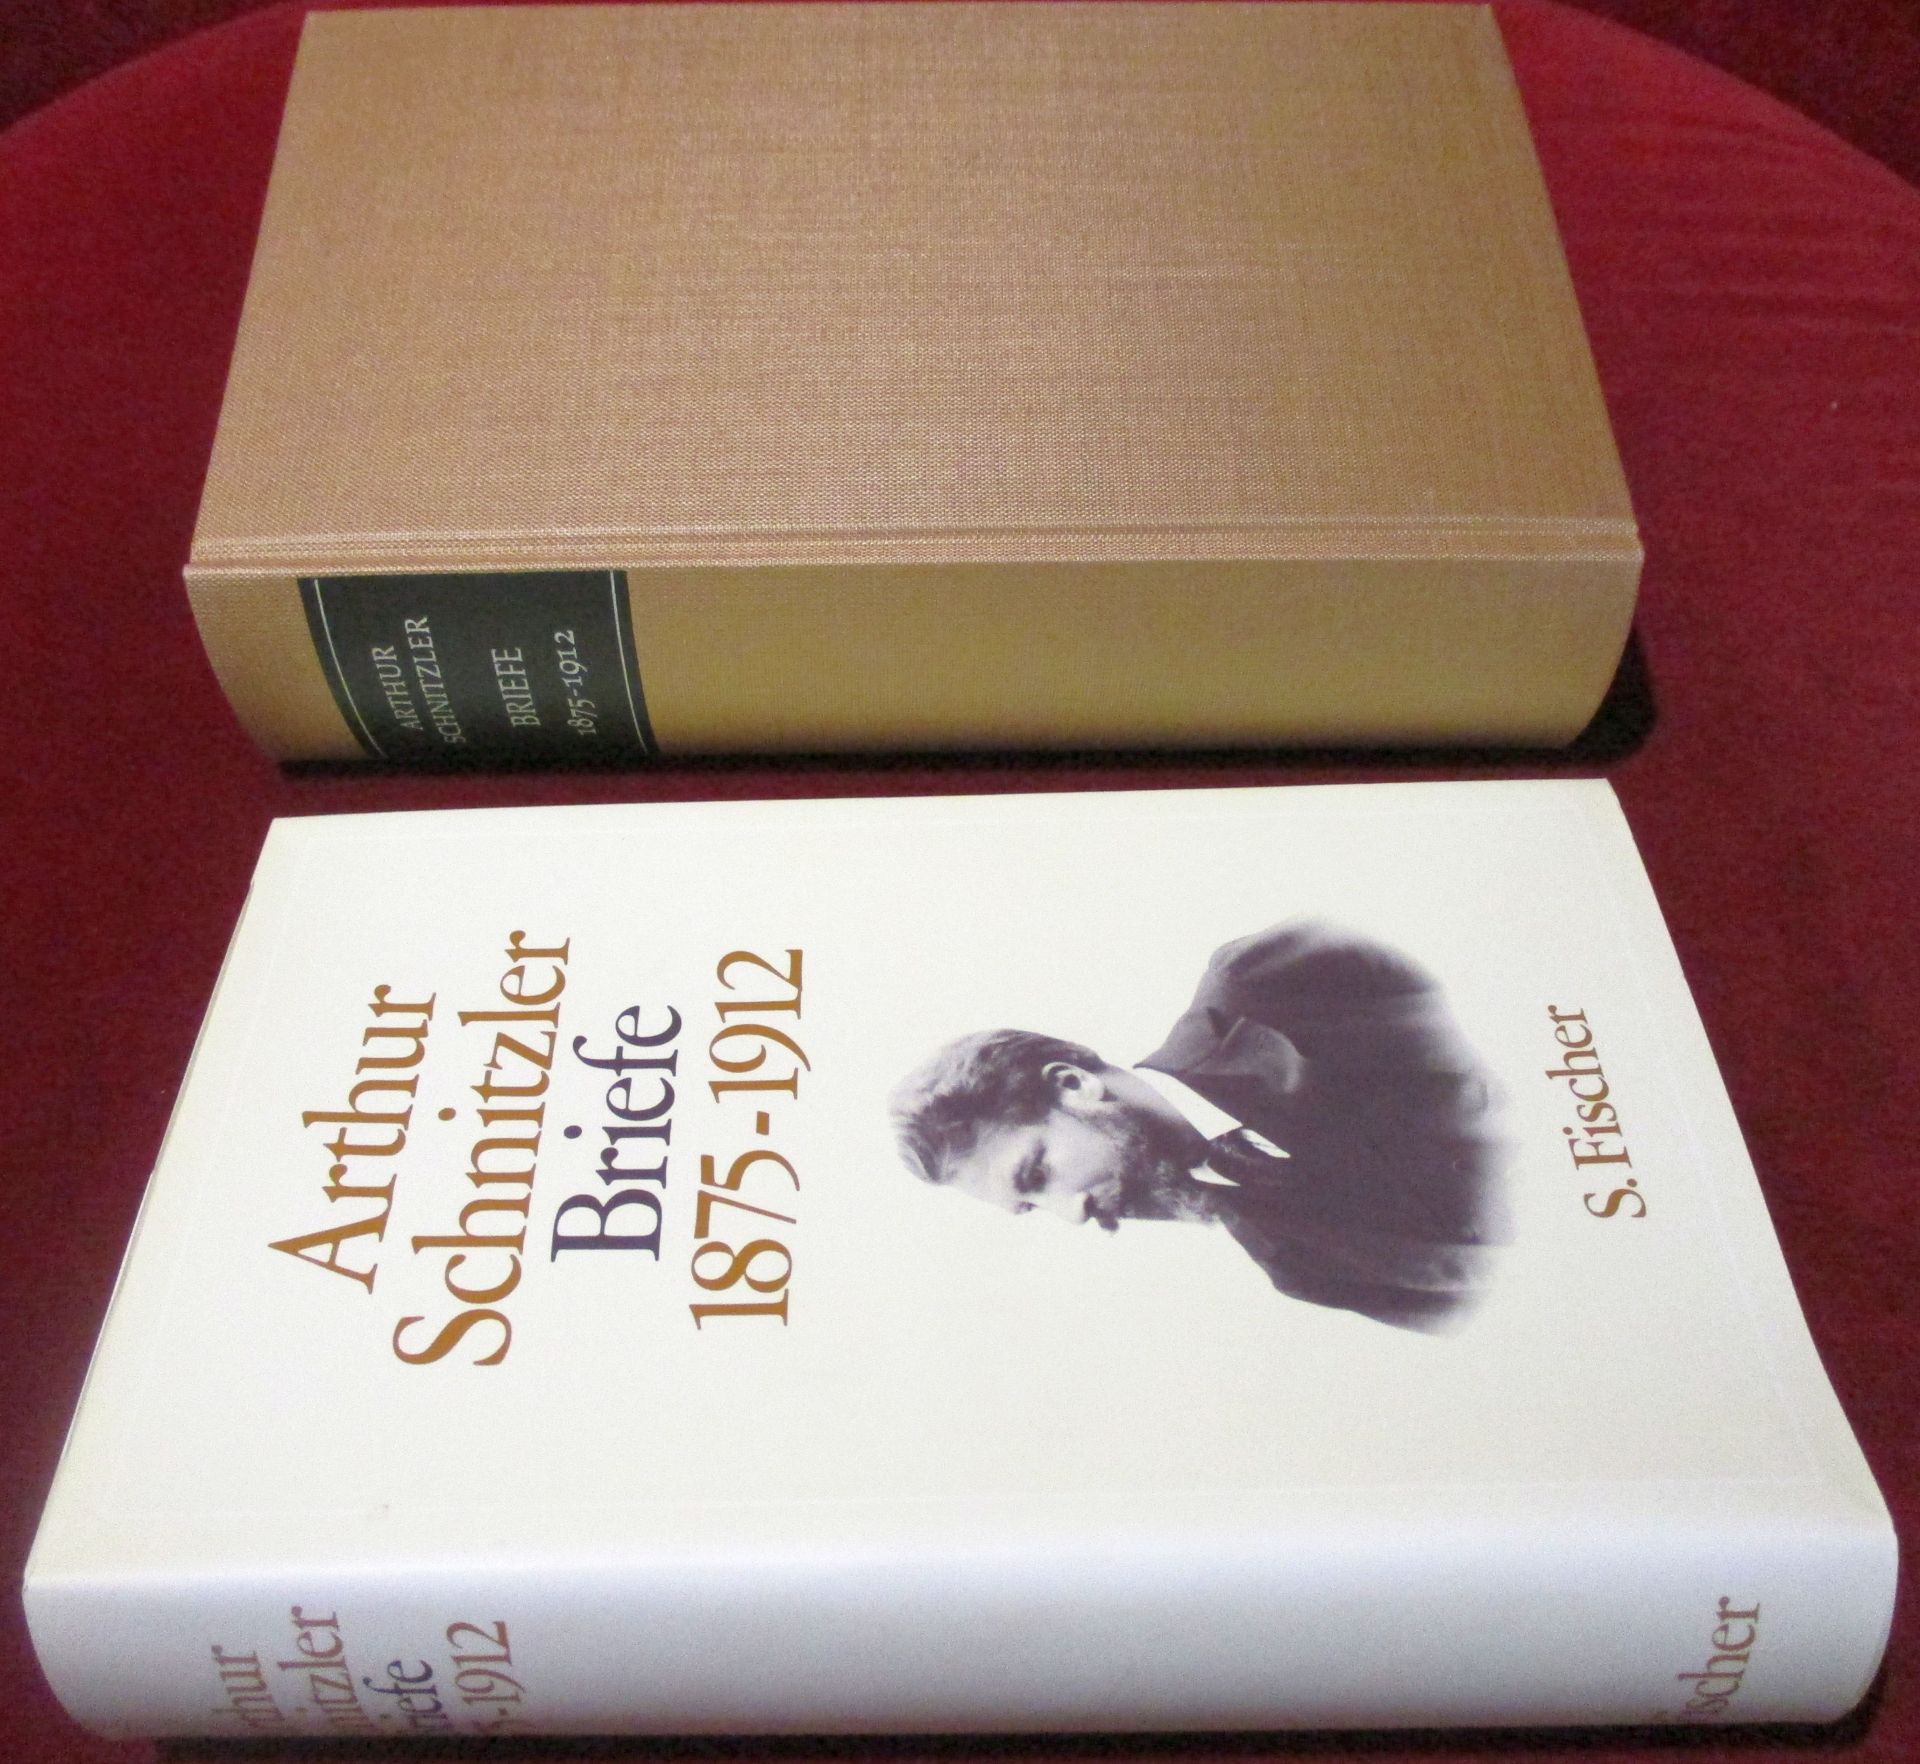 Arthur Schnitzler, herausgegeben von Therese Nickl und Heinrich Schnitzler. Arthur Schnitzler: Briefe. 1875 - 1912.